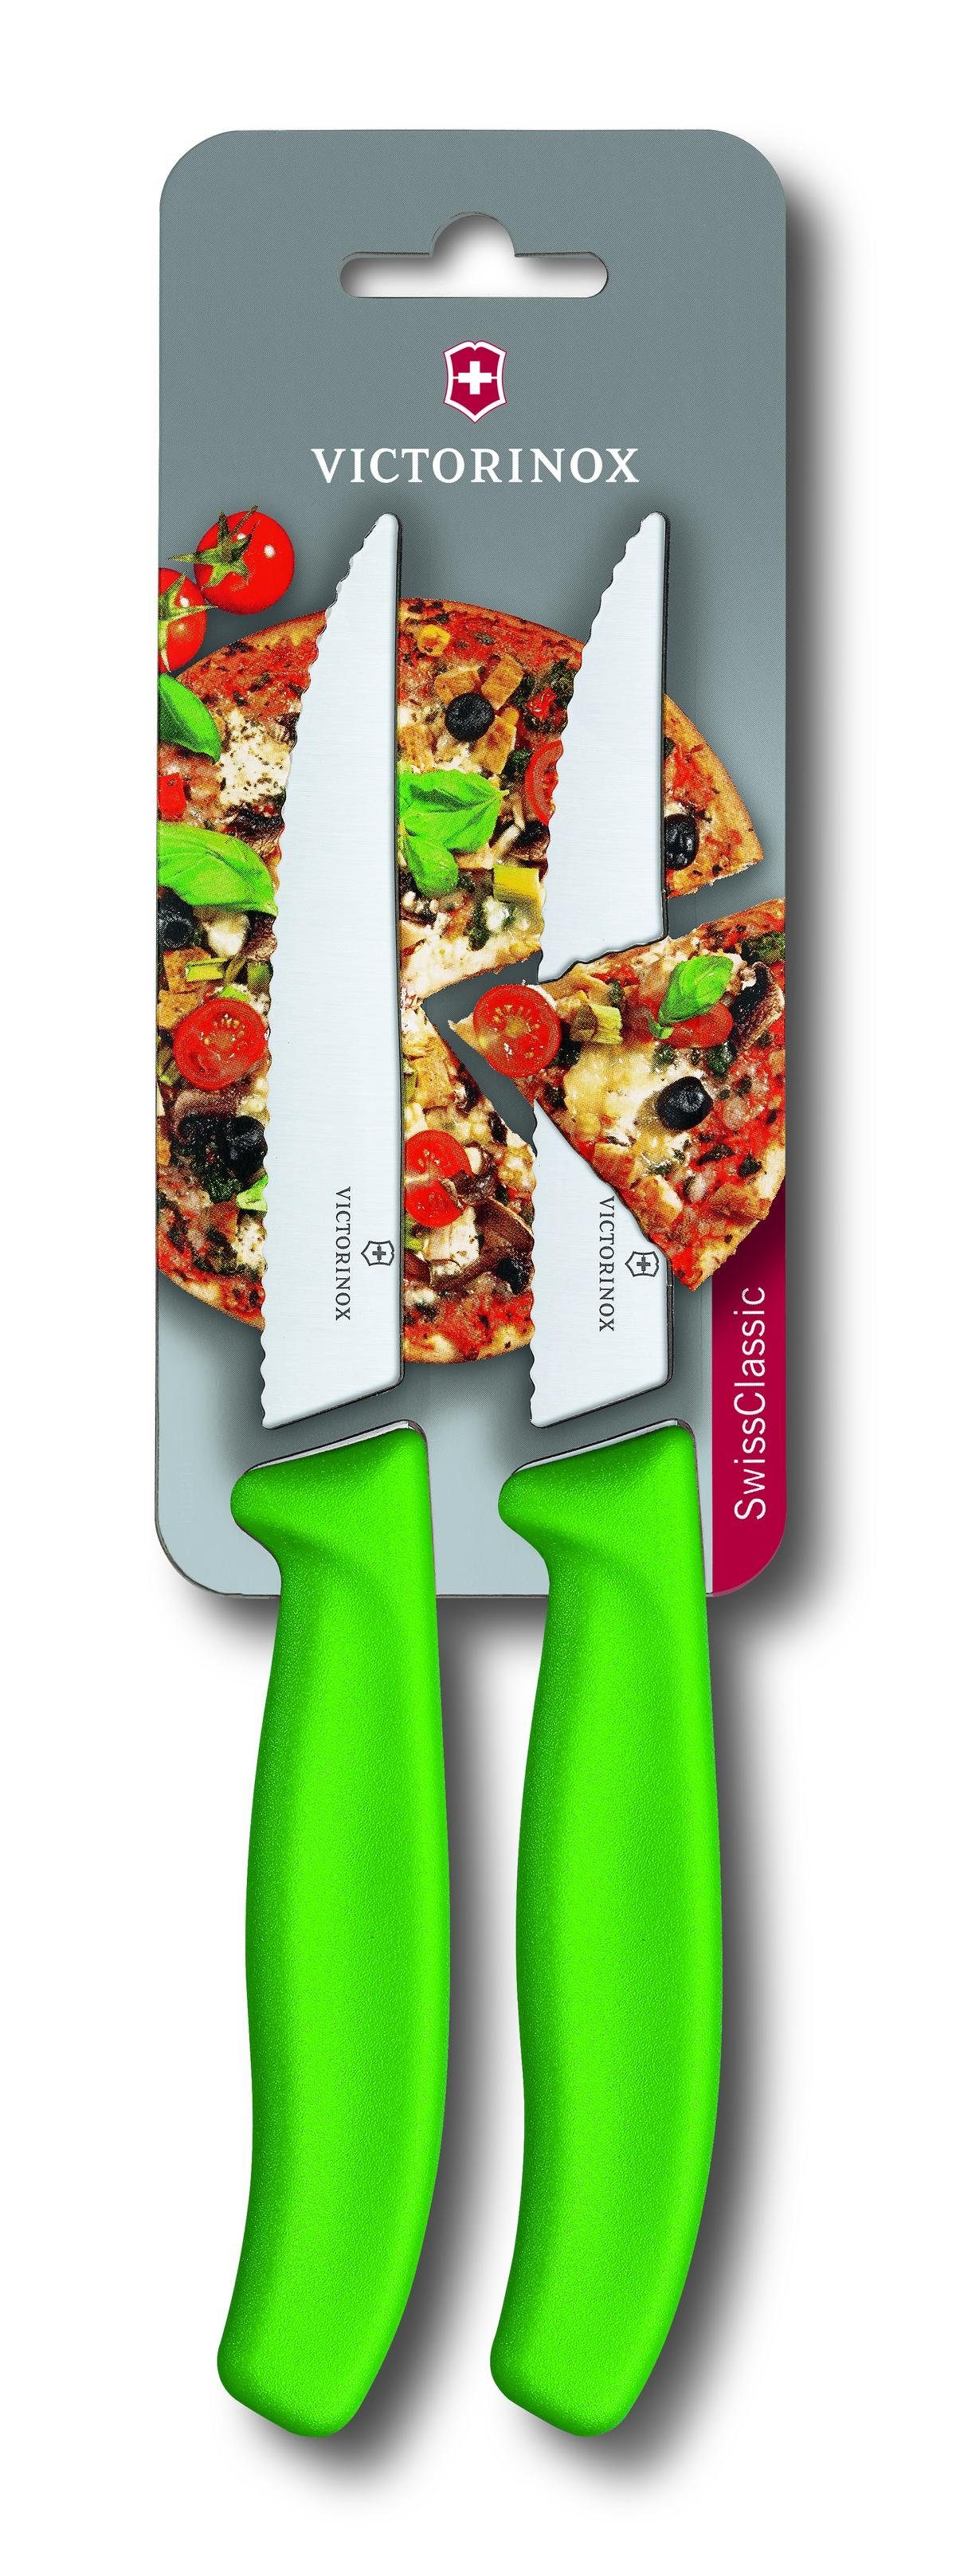 Victorinox Taschenmesser Pizzamesser, grün, SwissClassic mit Wellen, 2 auf Blister